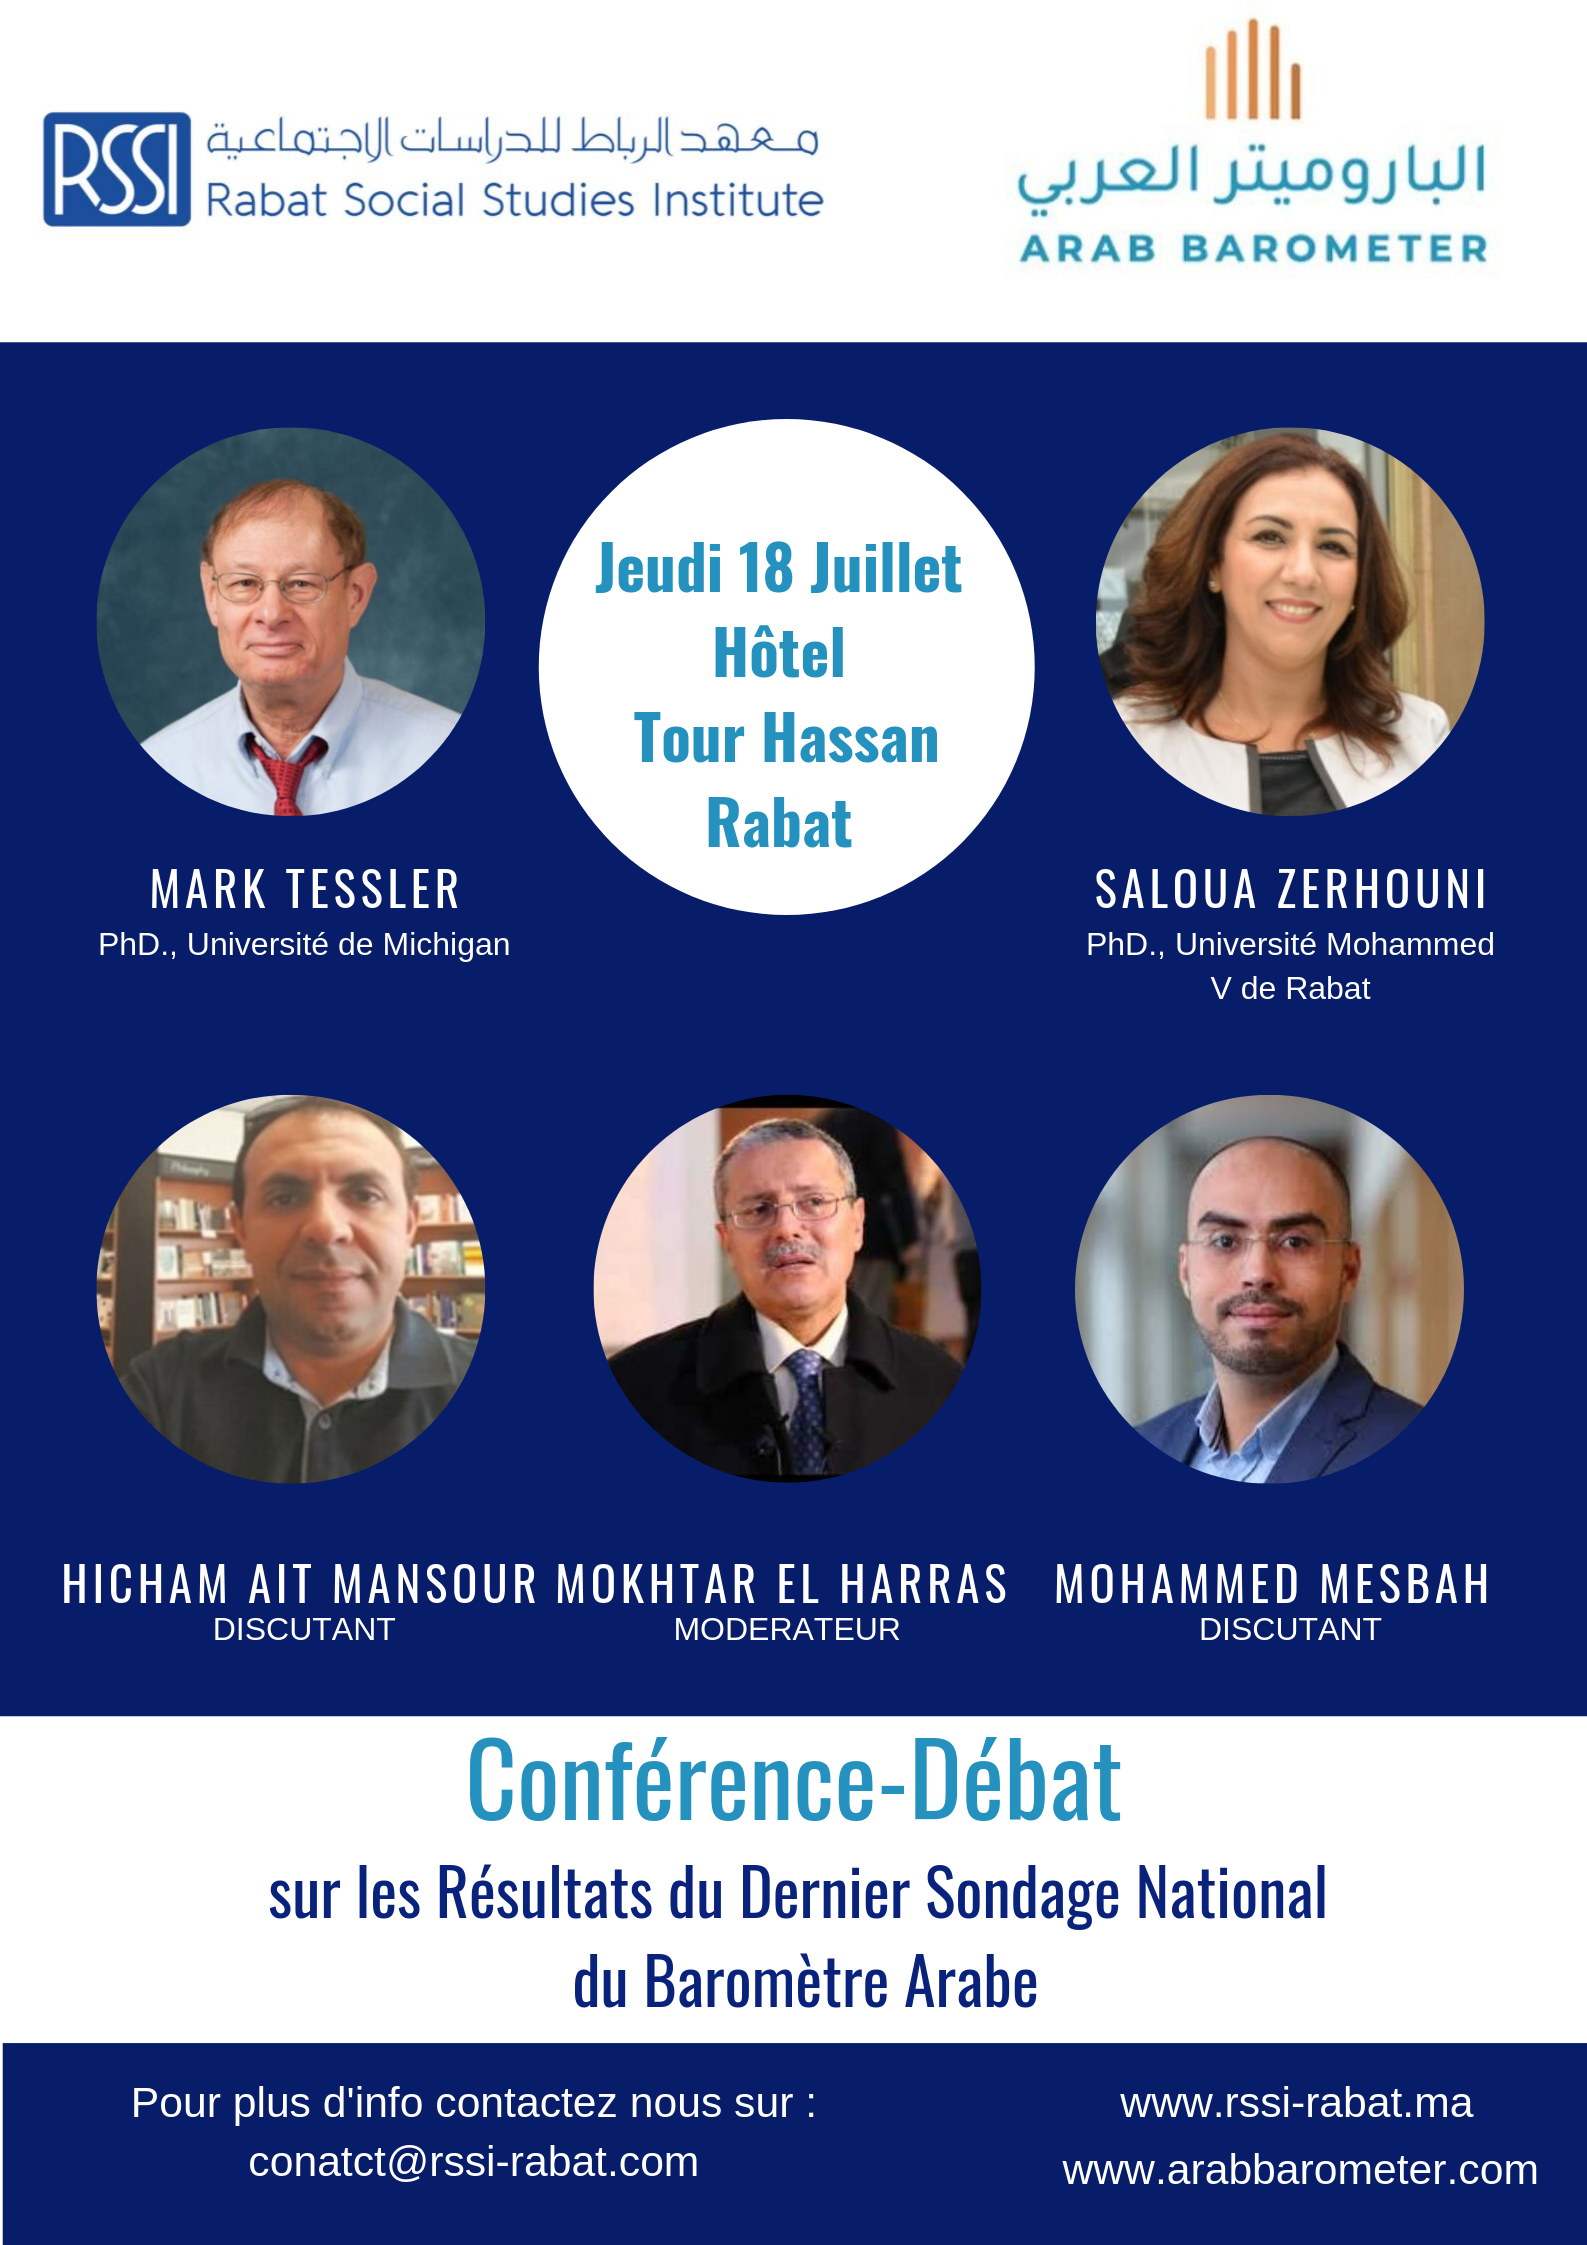 You are currently viewing Conférence-débat sur les résultats du dernier sondage du Baromètre Arabe au Maroc